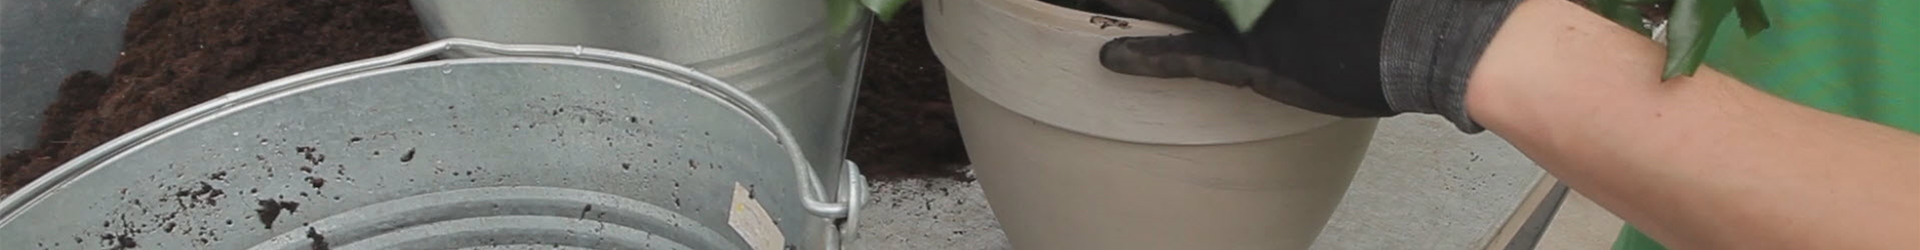 Rosen - Einpflanzen in ein Gefäß (thumbnail).jpg